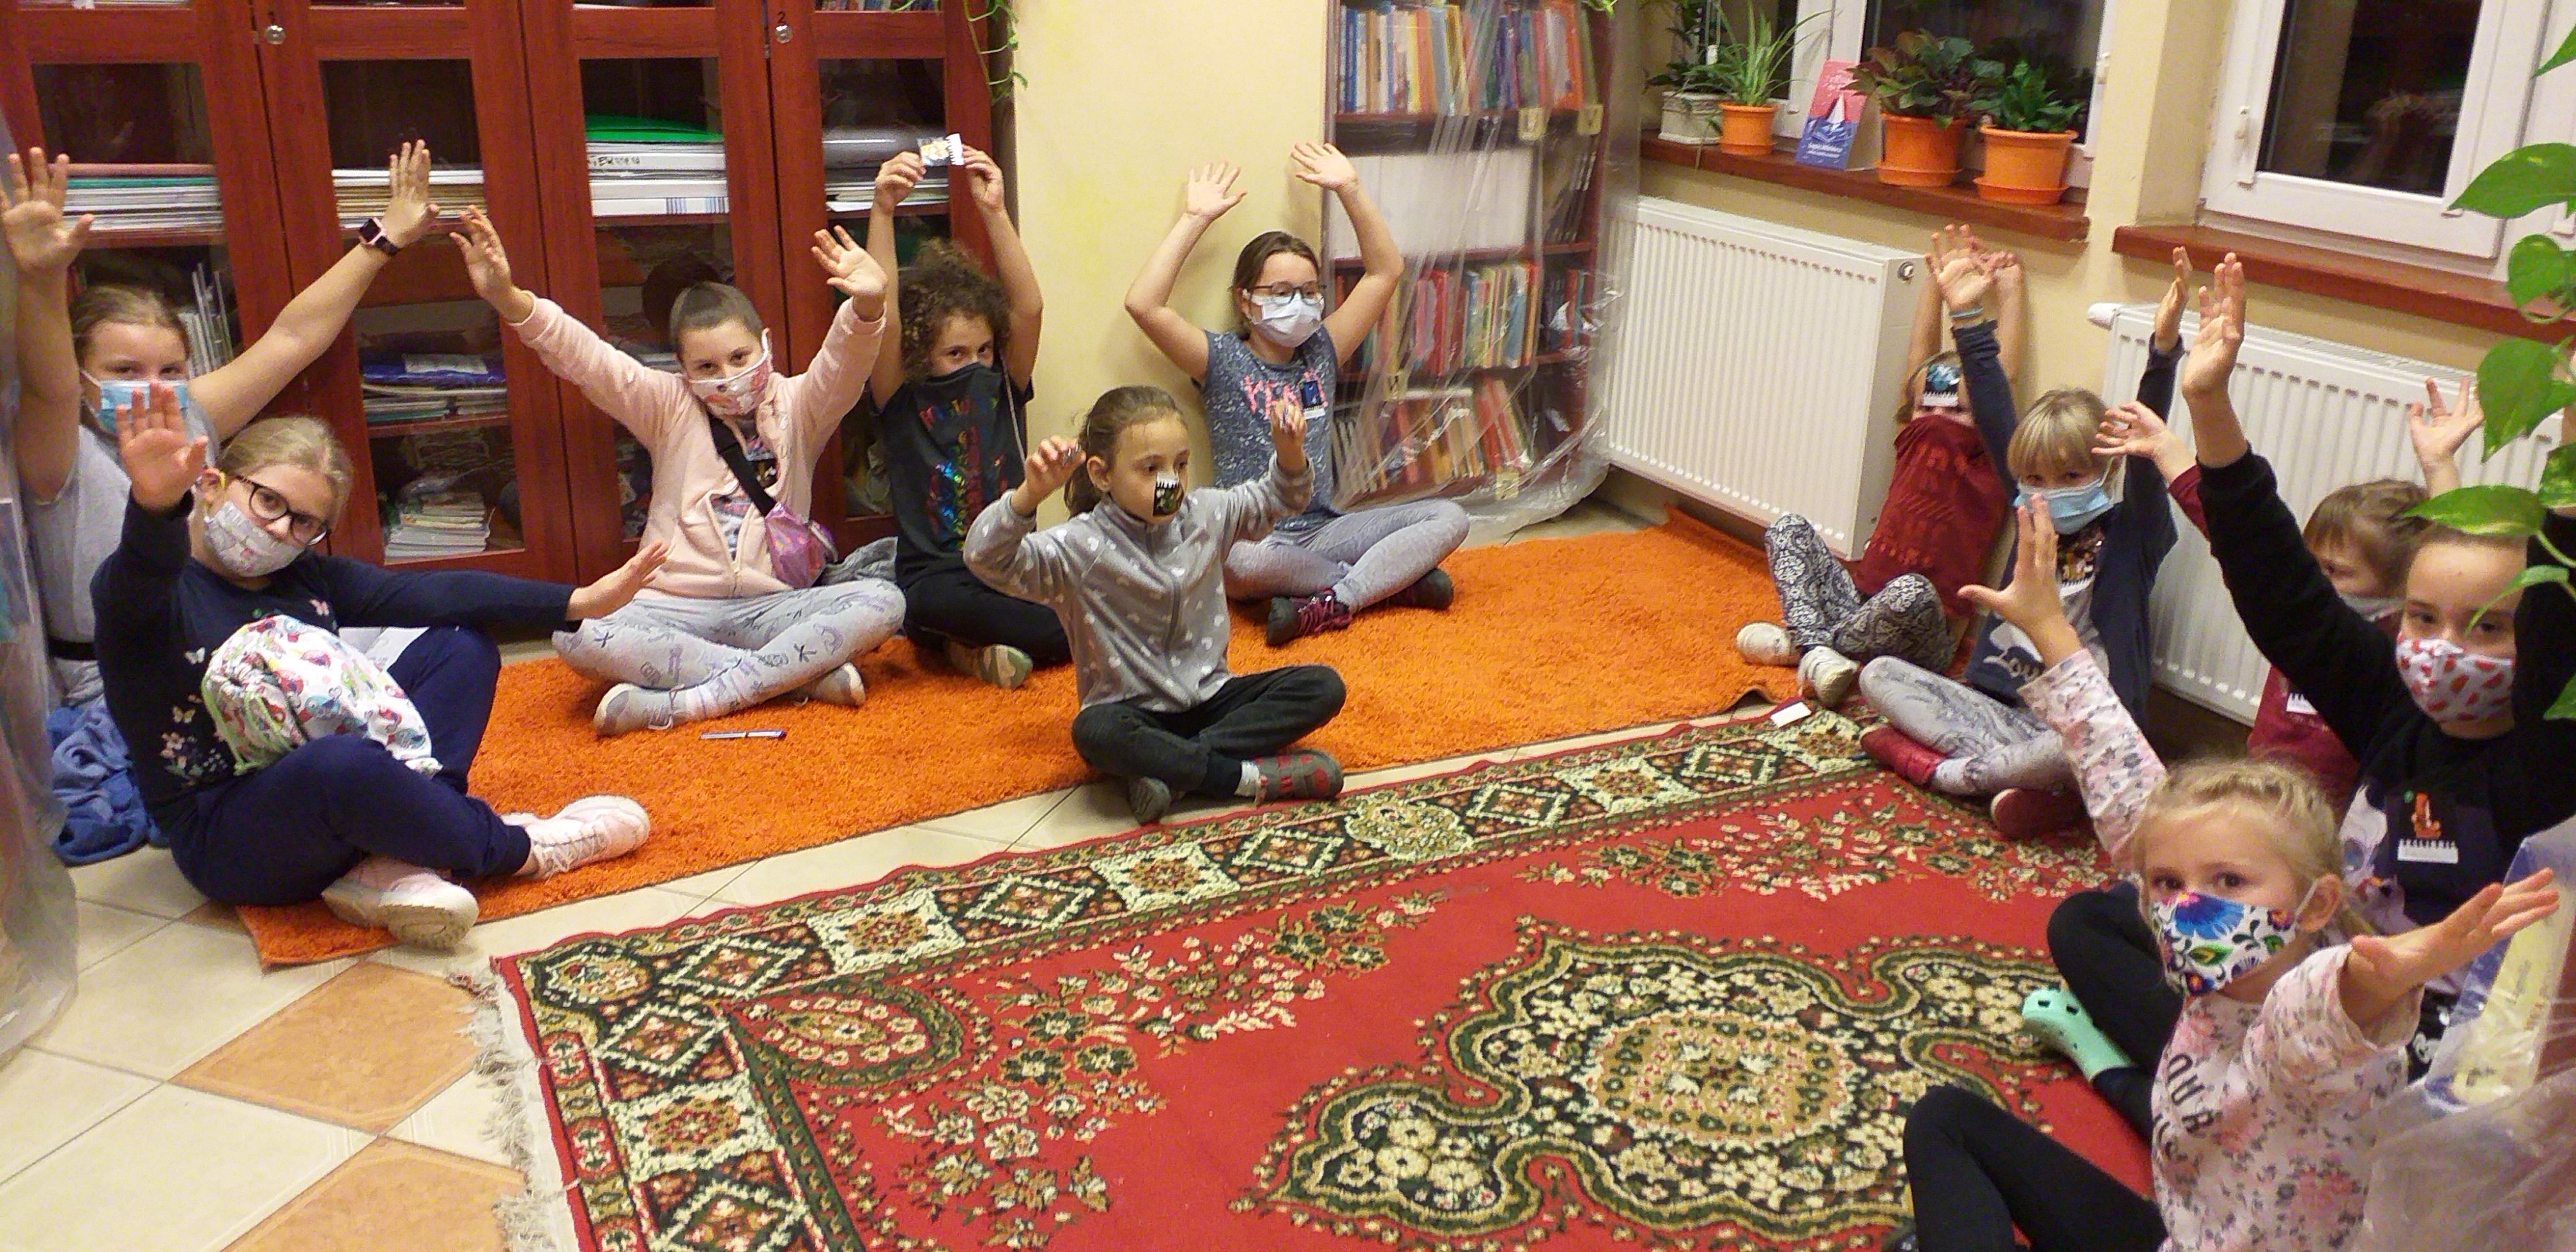 Jedenaścioro dzieci siedzi po turecku na podłodze z uniesionymi rękami, część trzyma się za ręce. Na środku kolorowy dywan.